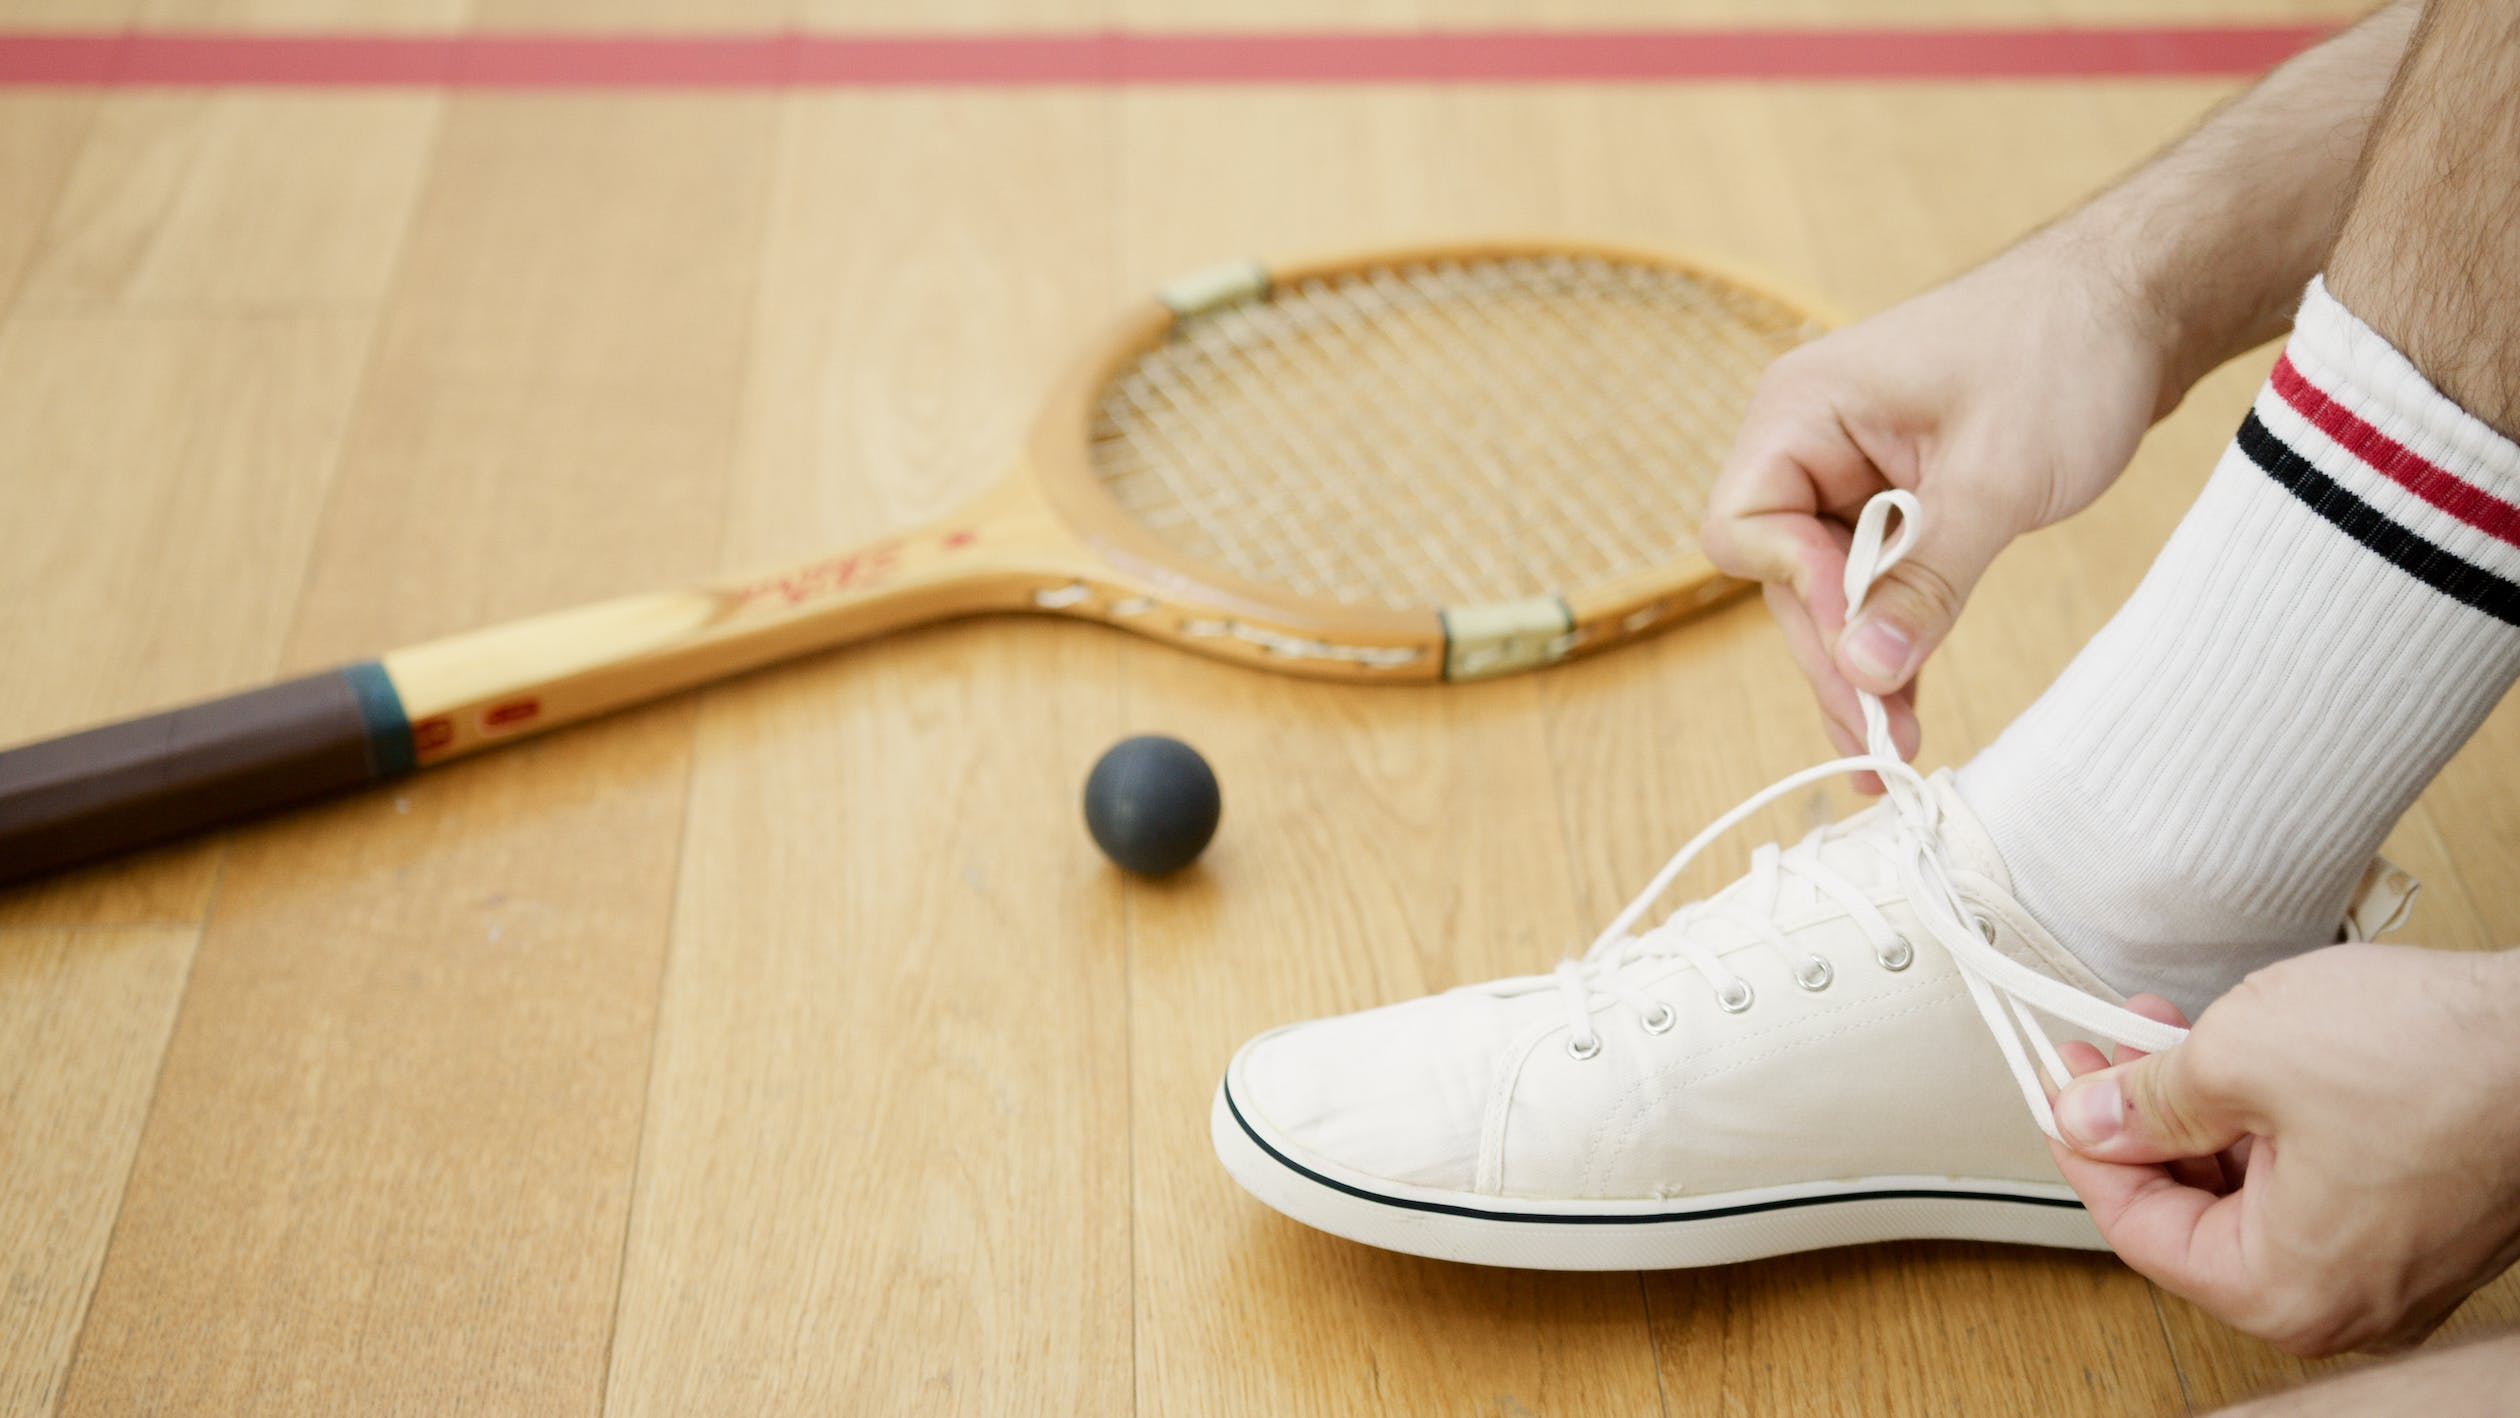 Wooden tennis racquet